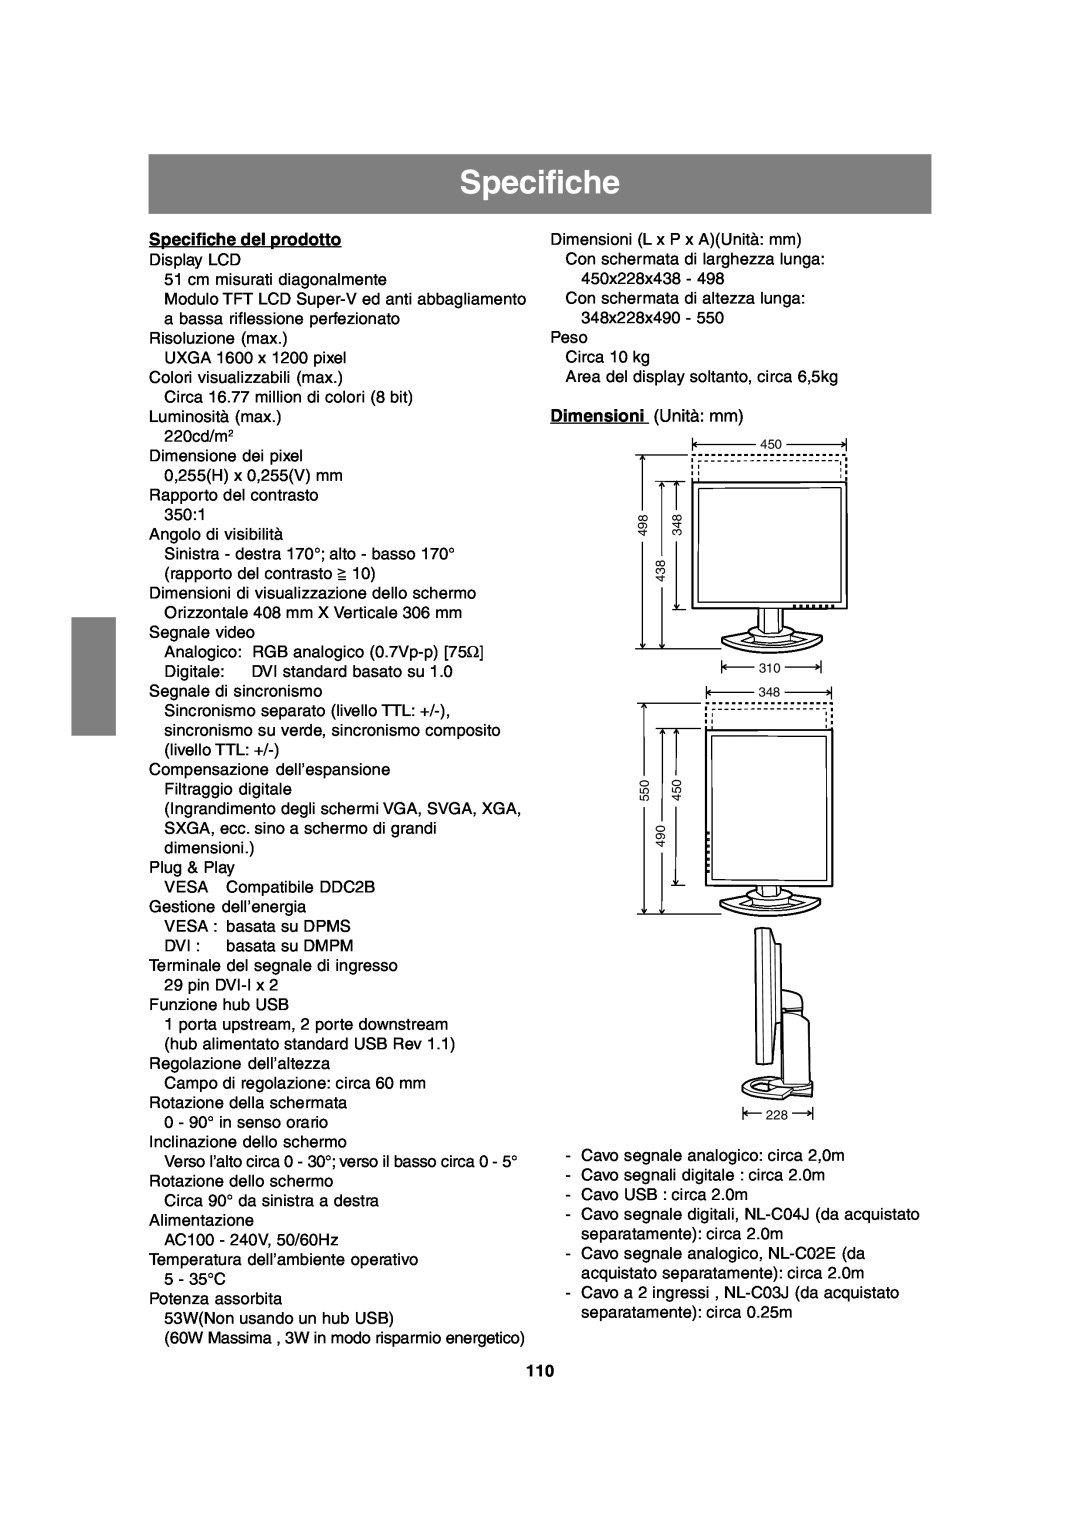 Sharp LL-T2020 operation manual Specifiche del prodotto, Dimensioni Unità mm 